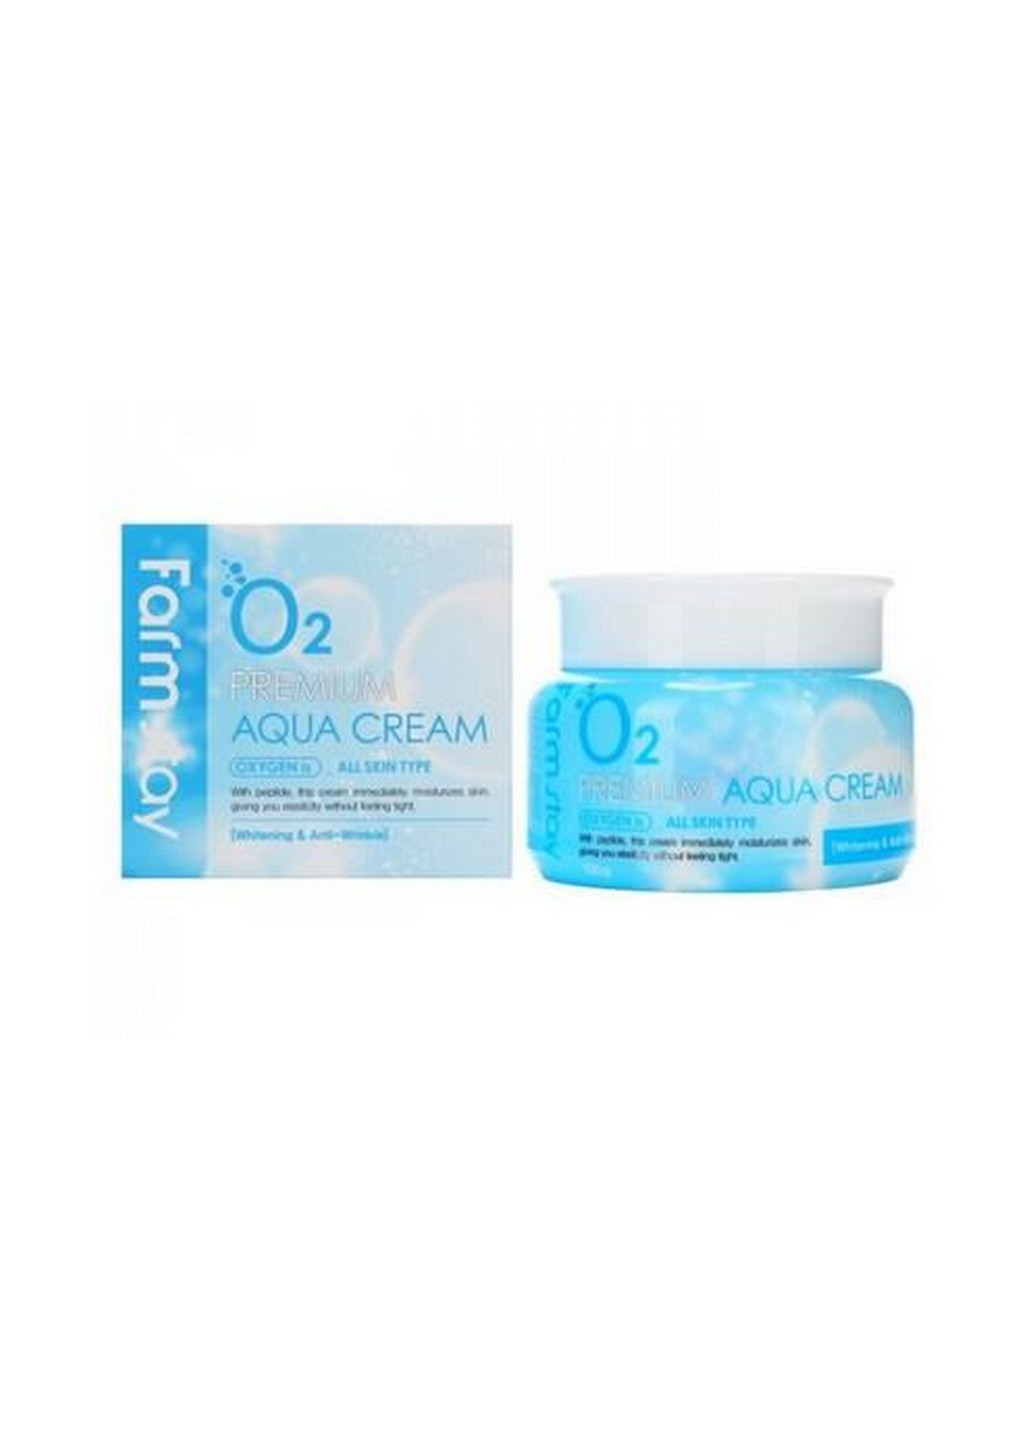 Увлажняющий крем для лица O2 Aqua Cream кислородный с ниацинамидом FarmStay (254844270)